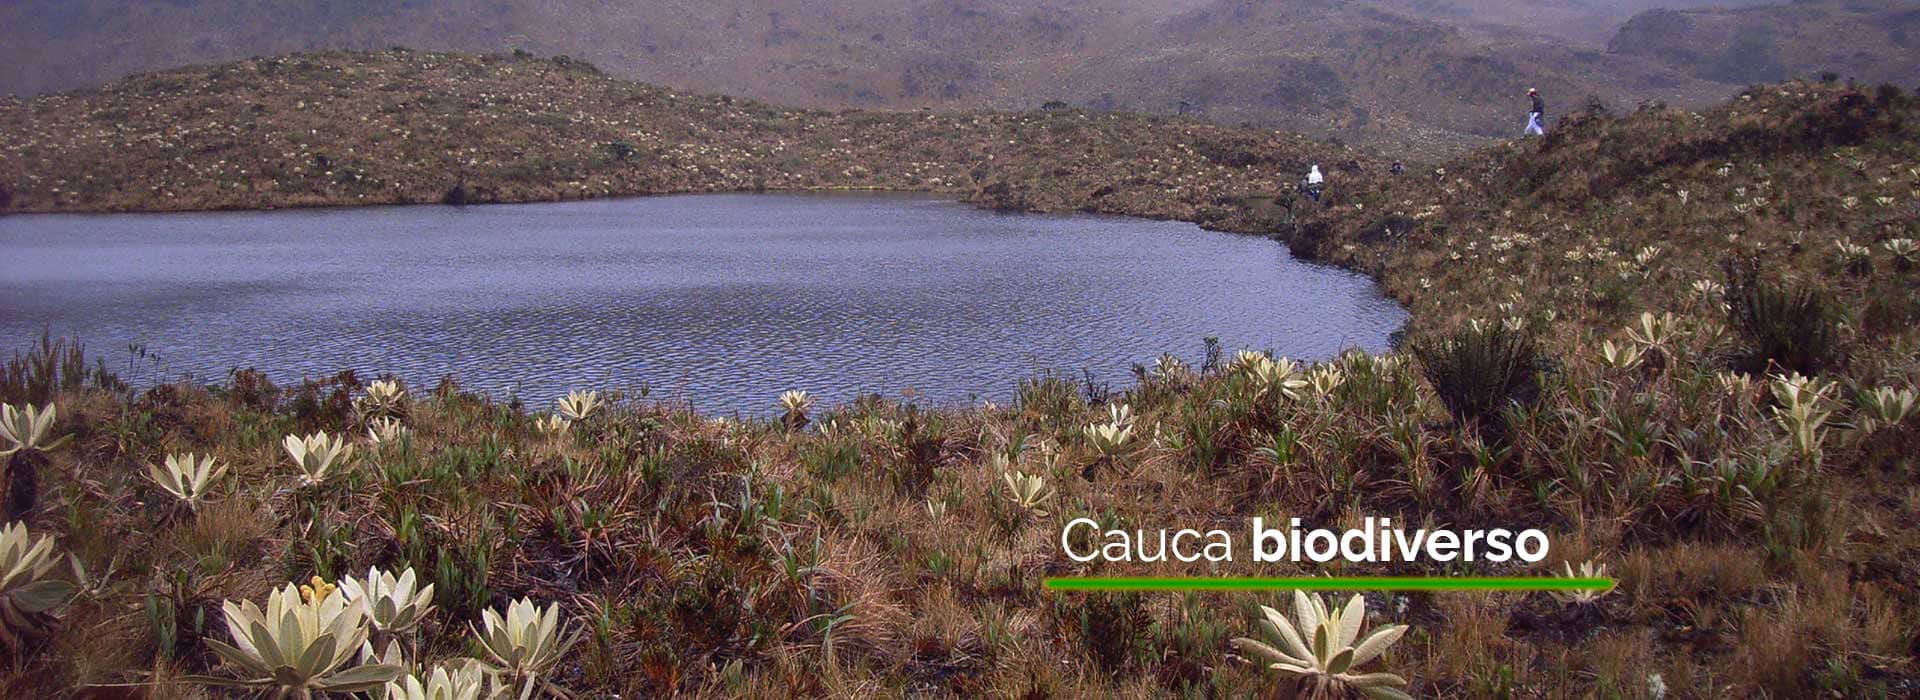 Cauca biodiverso - Jorge Bastidas